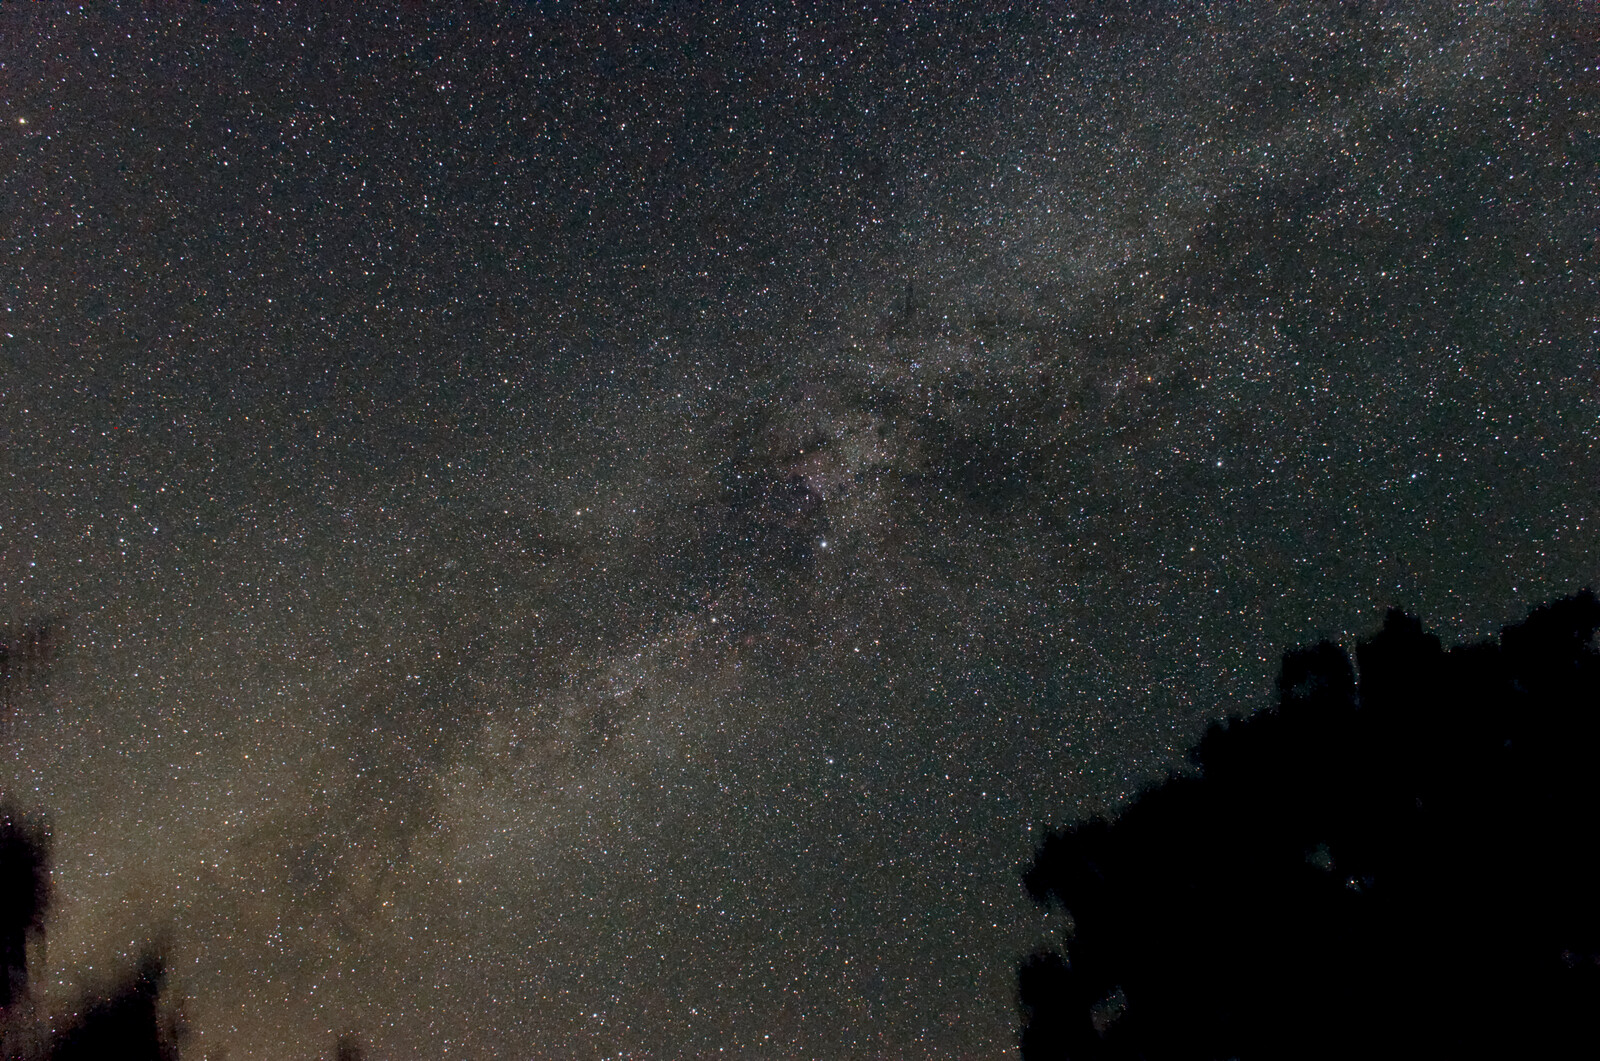 Milky Way, Cygnus region